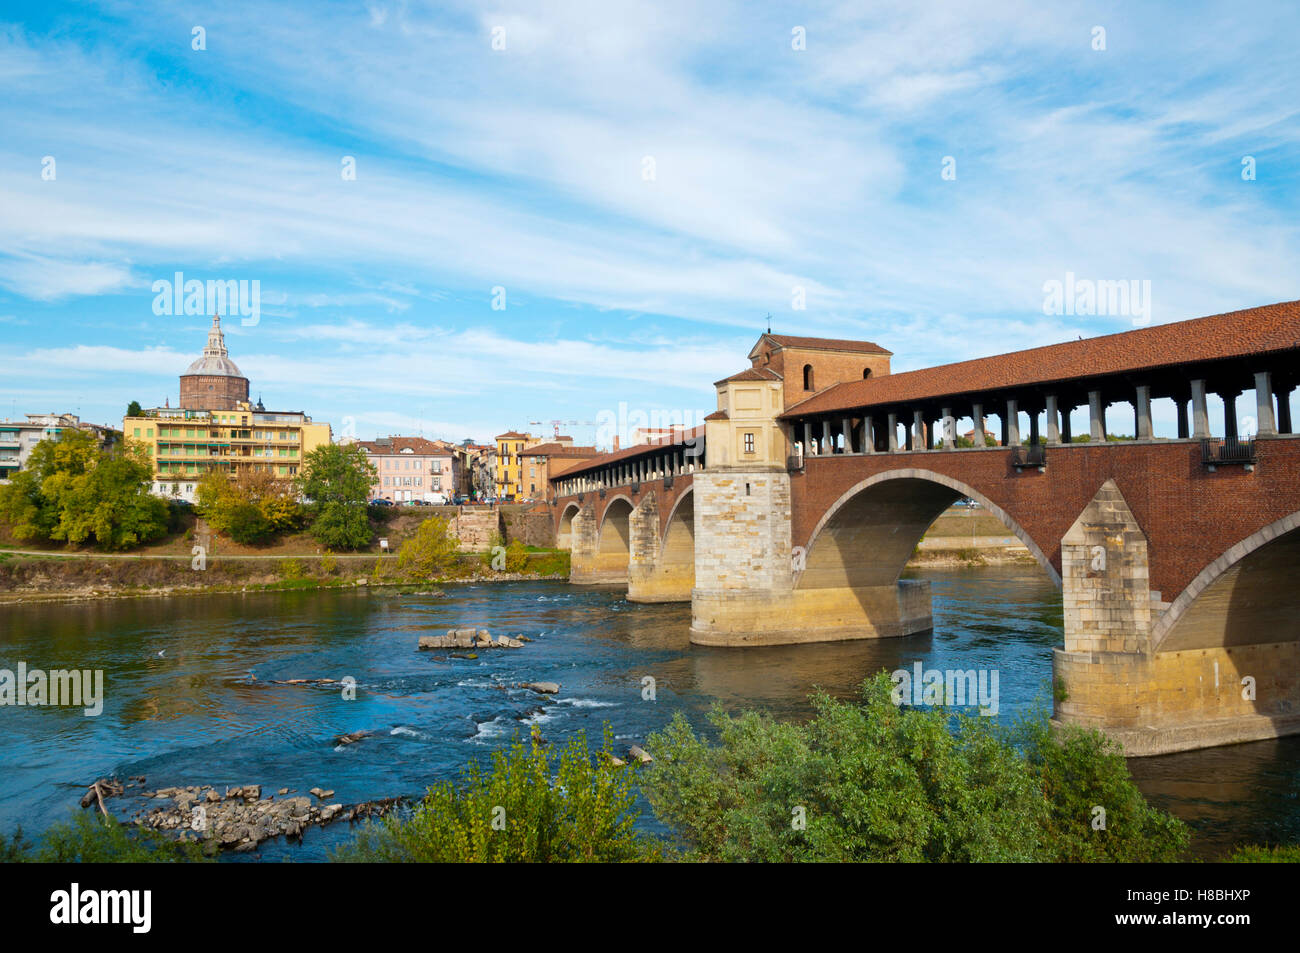 Ponte Coperto, crosses River Ticino, San Teodore church in background, Pavia, Lombardy, Italy Stock Photo